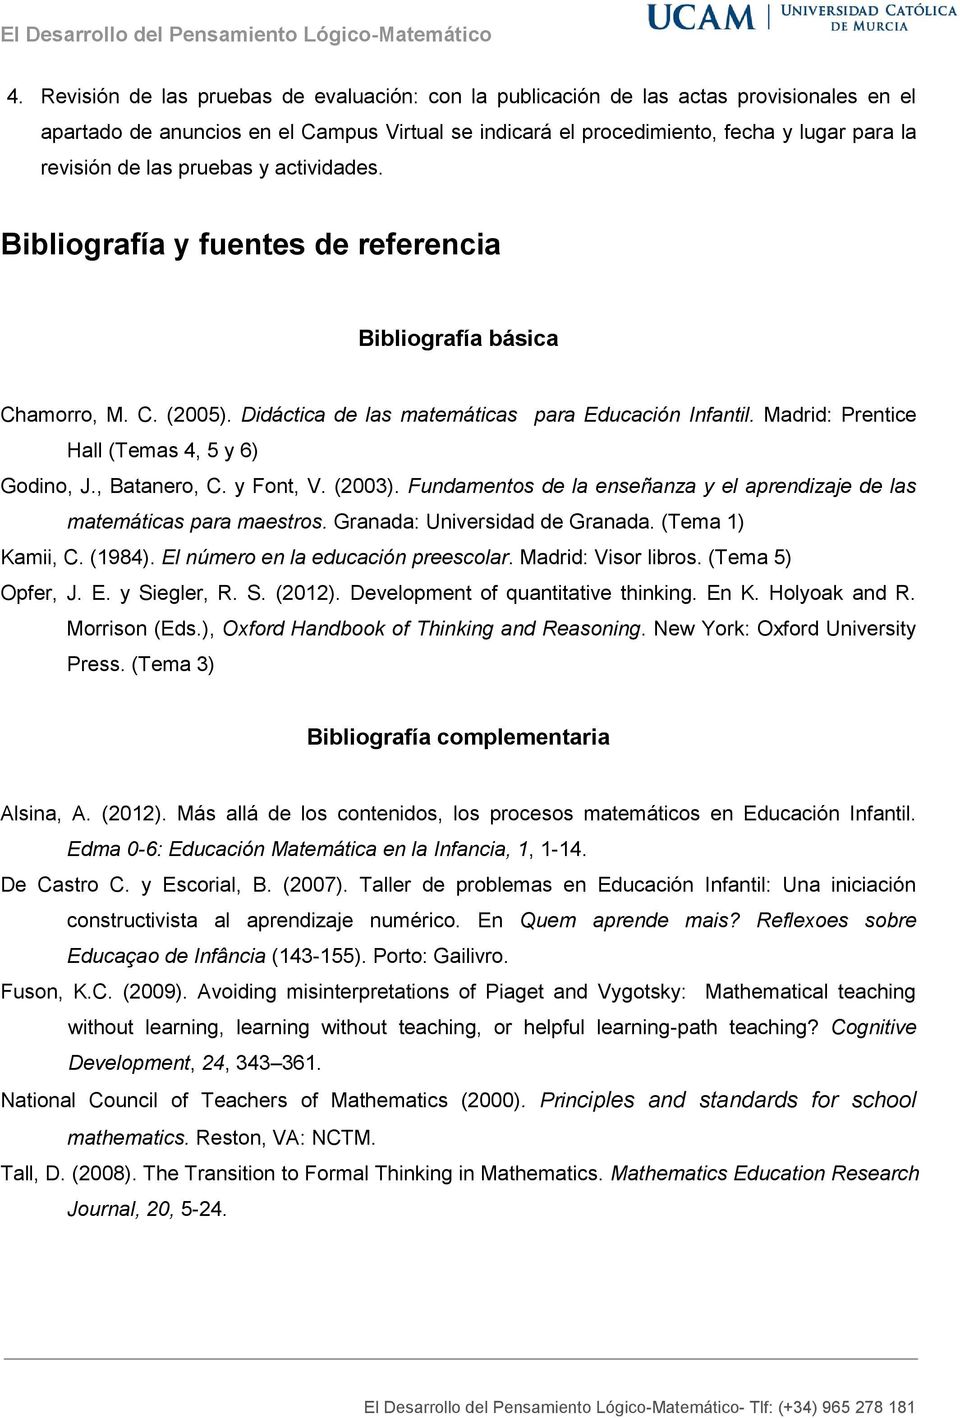 Madrid: Prentice Hall (Temas 4, 5 y 6) Godino, J., Batanero, C. y Font, V. (2003). Fundamentos de la enseñanza y el aprendizaje de las matemáticas para maestros. Granada: Universidad de Granada.